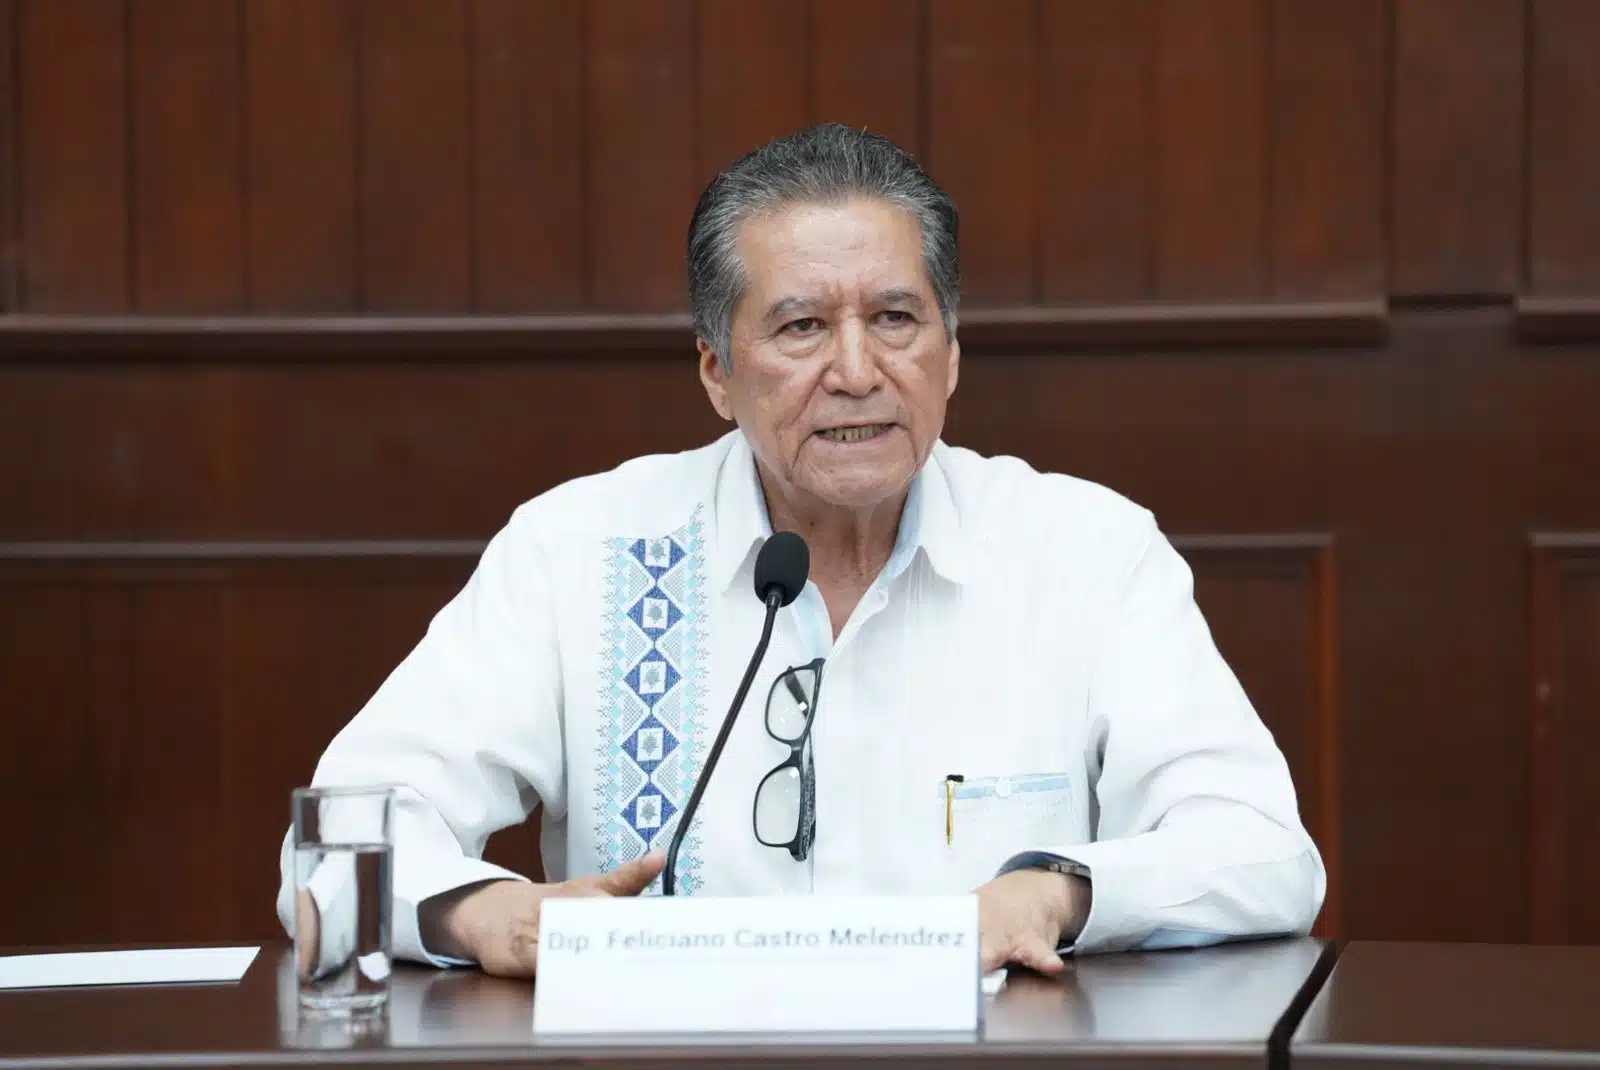 Presidente de la Junta de Coordinación Política del poder Legislativo, Feliciano Castro Meléndrez